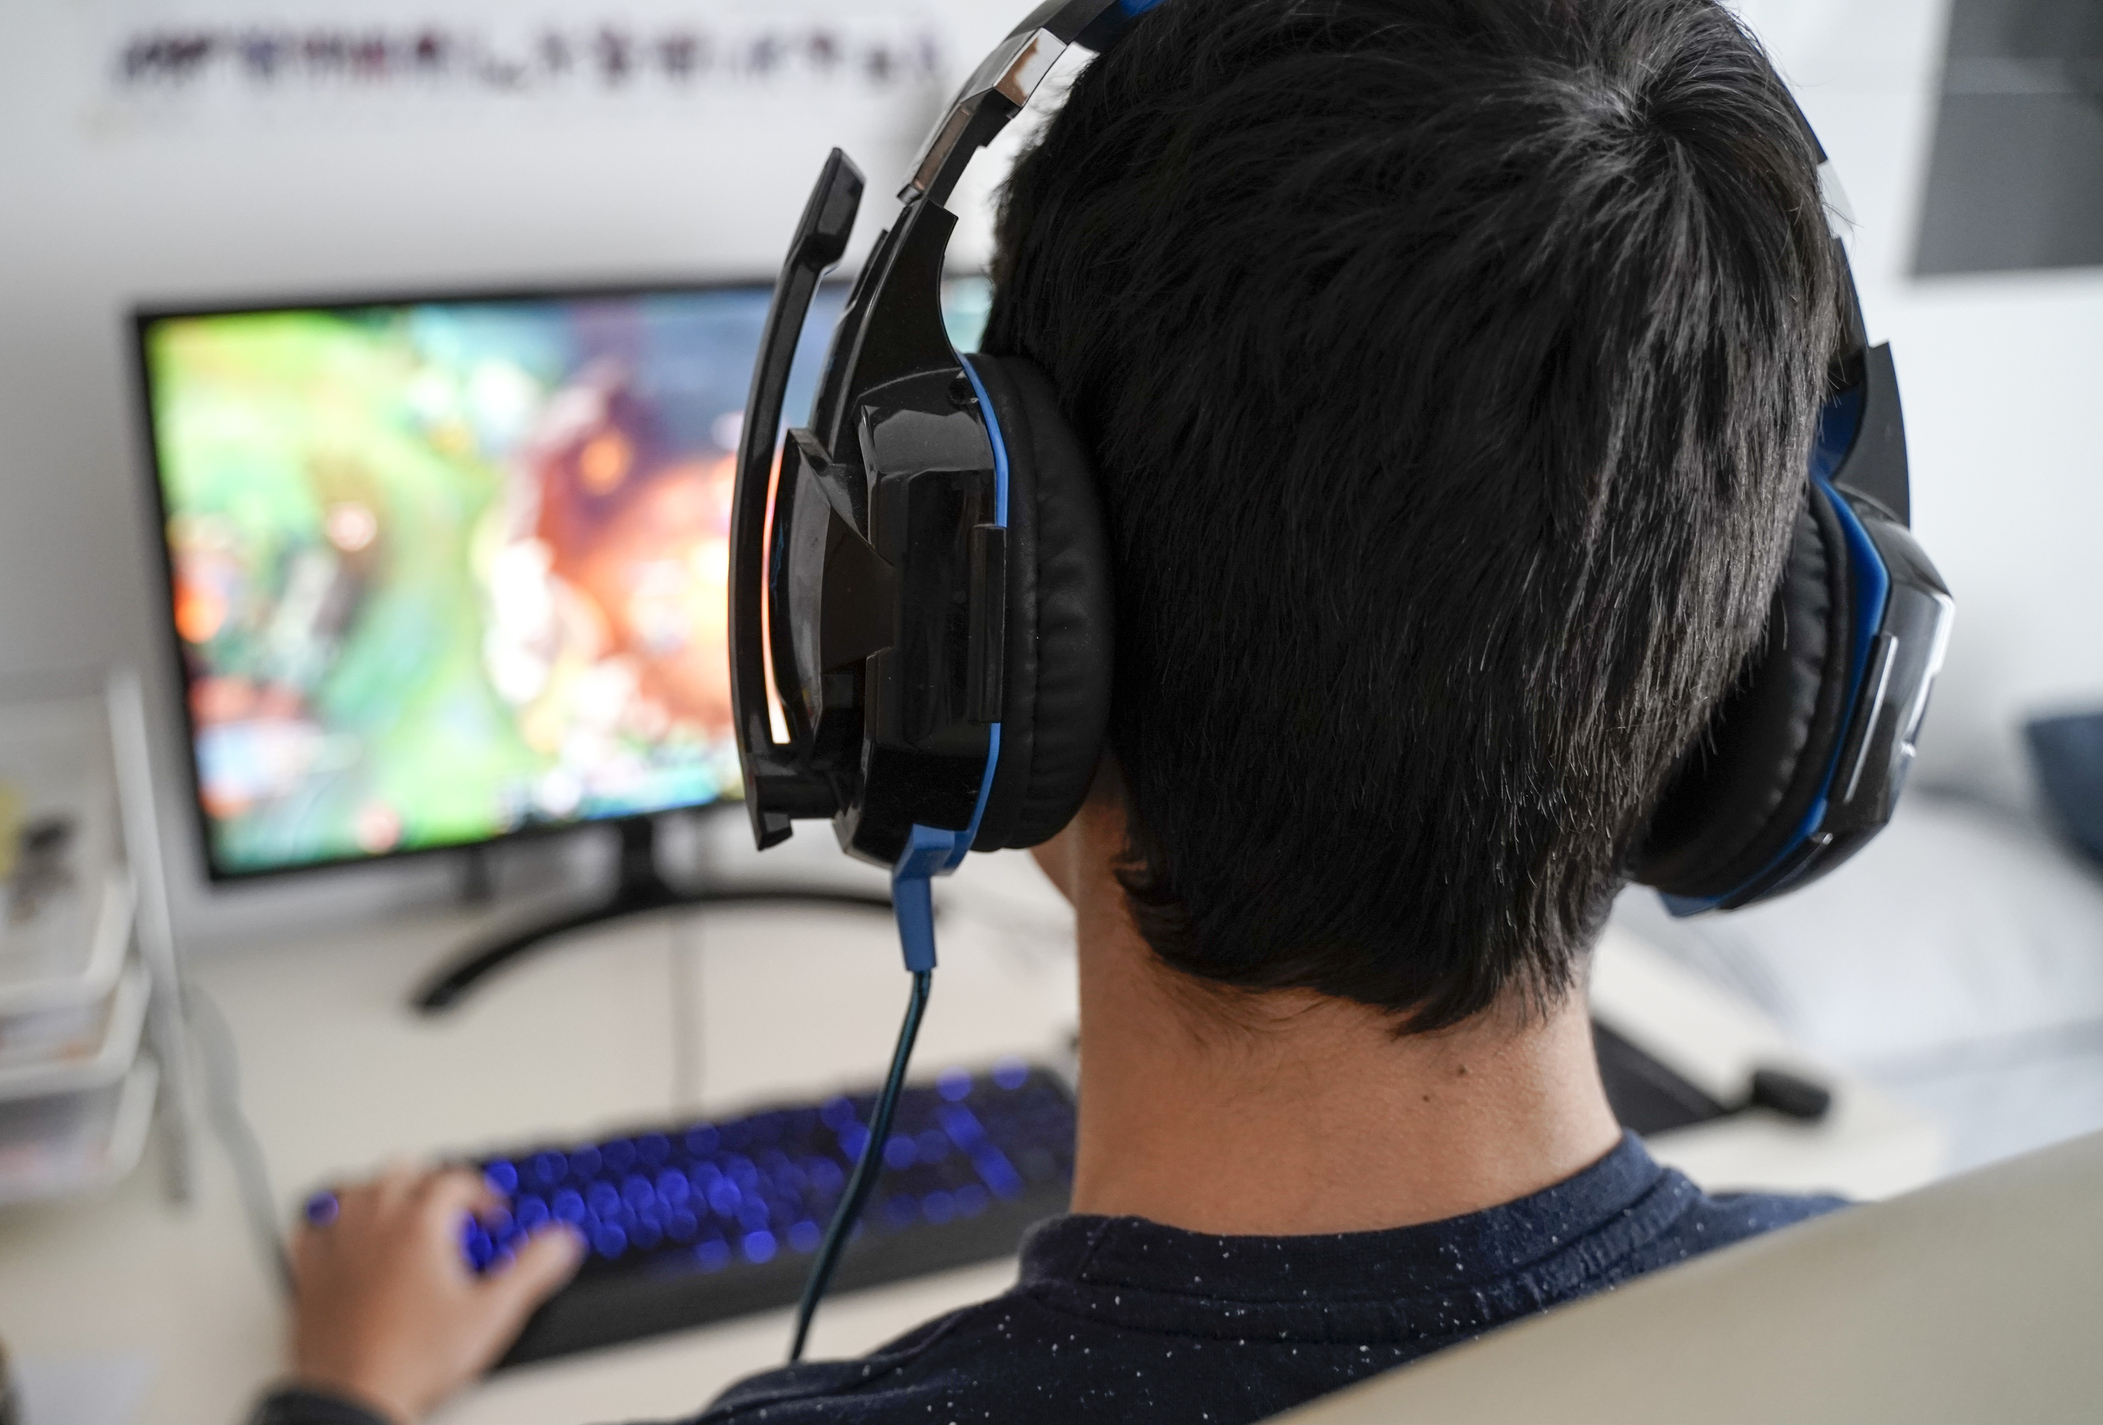 Un hombre jugando videojuegos en su computador.